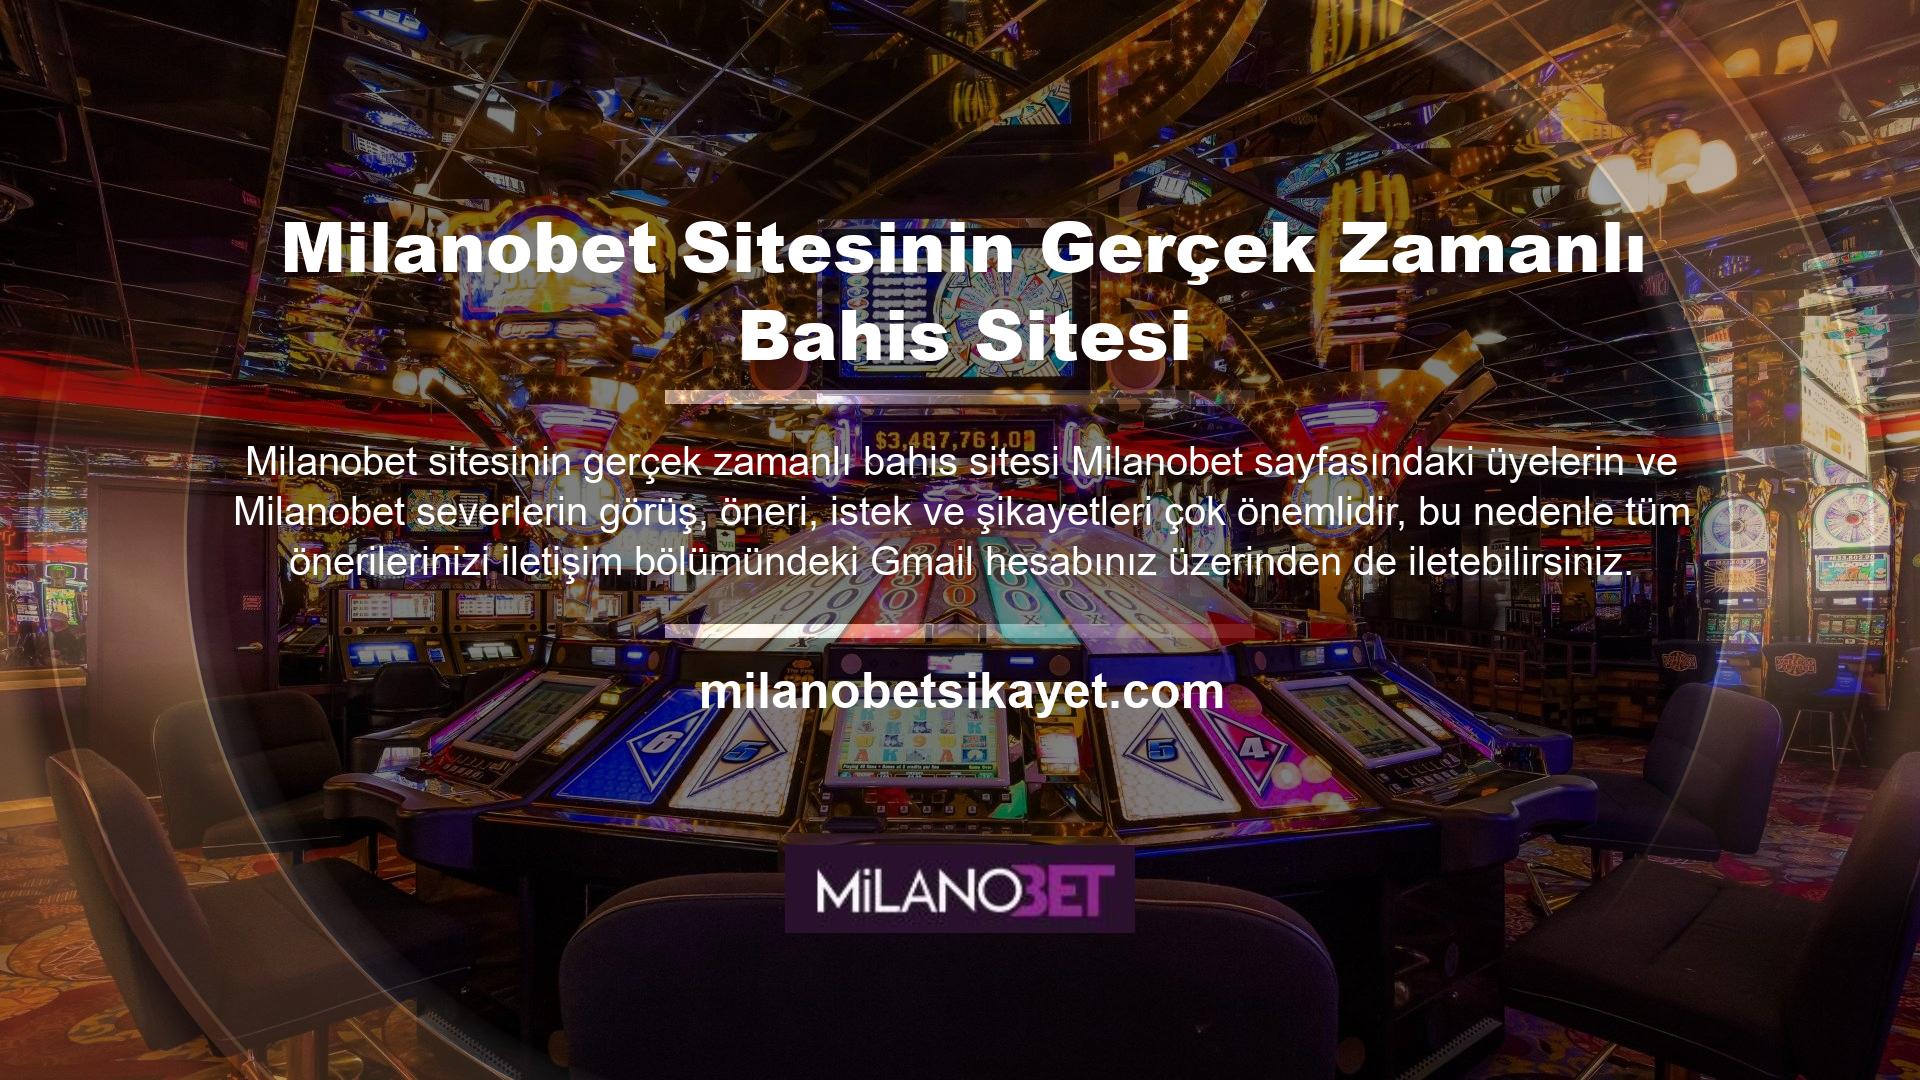 Gerçek zamanlı bahis siteleri ile para kazanmak isteyenlerin ilk tercihlerinden biri olan Milanobet sitesi, geniş oyun yelpazesiyle müşterilerini memnun etmektedir